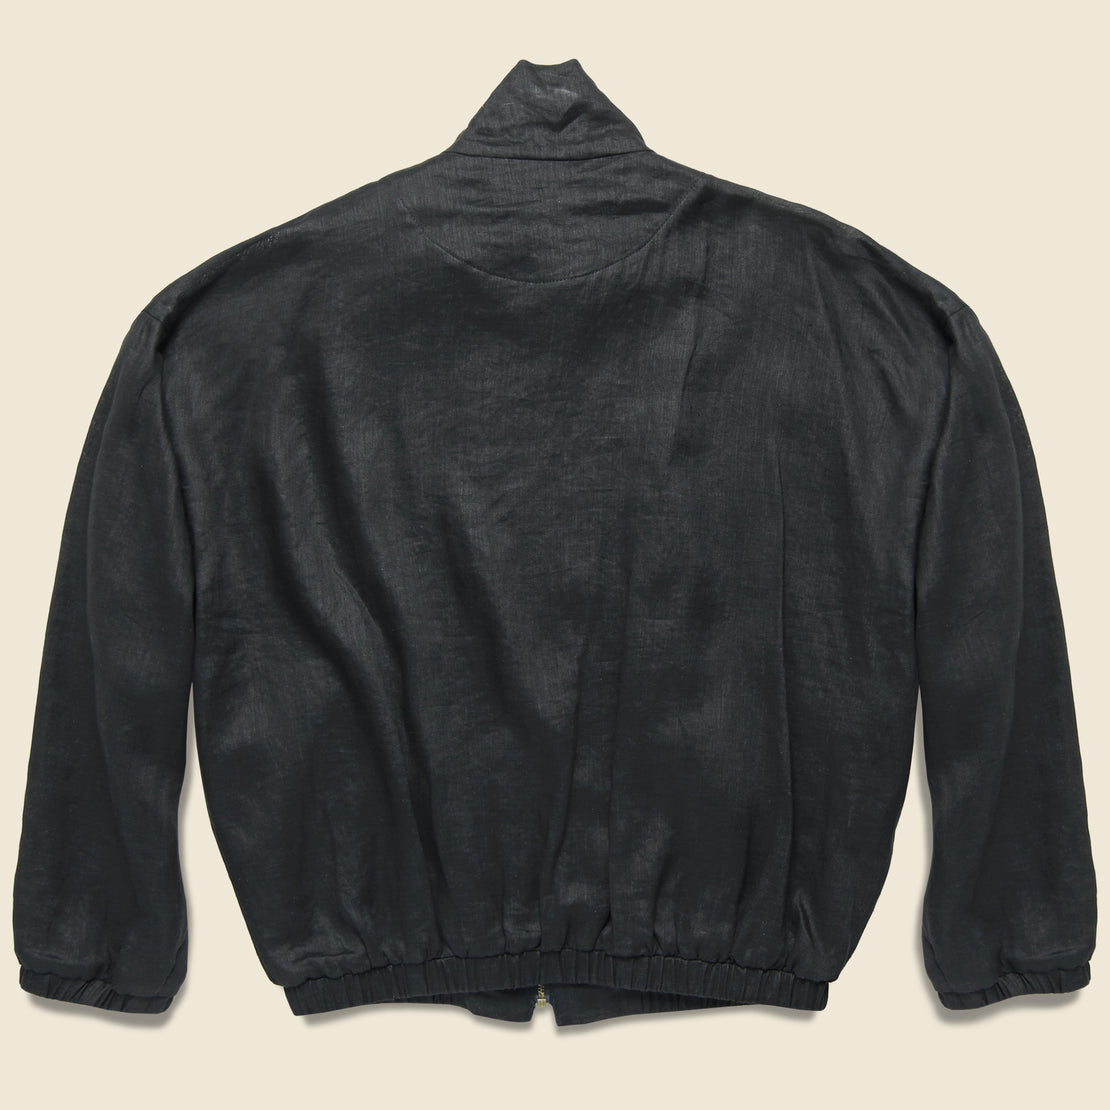 Old Dog Linen Blouson Jacket - Black